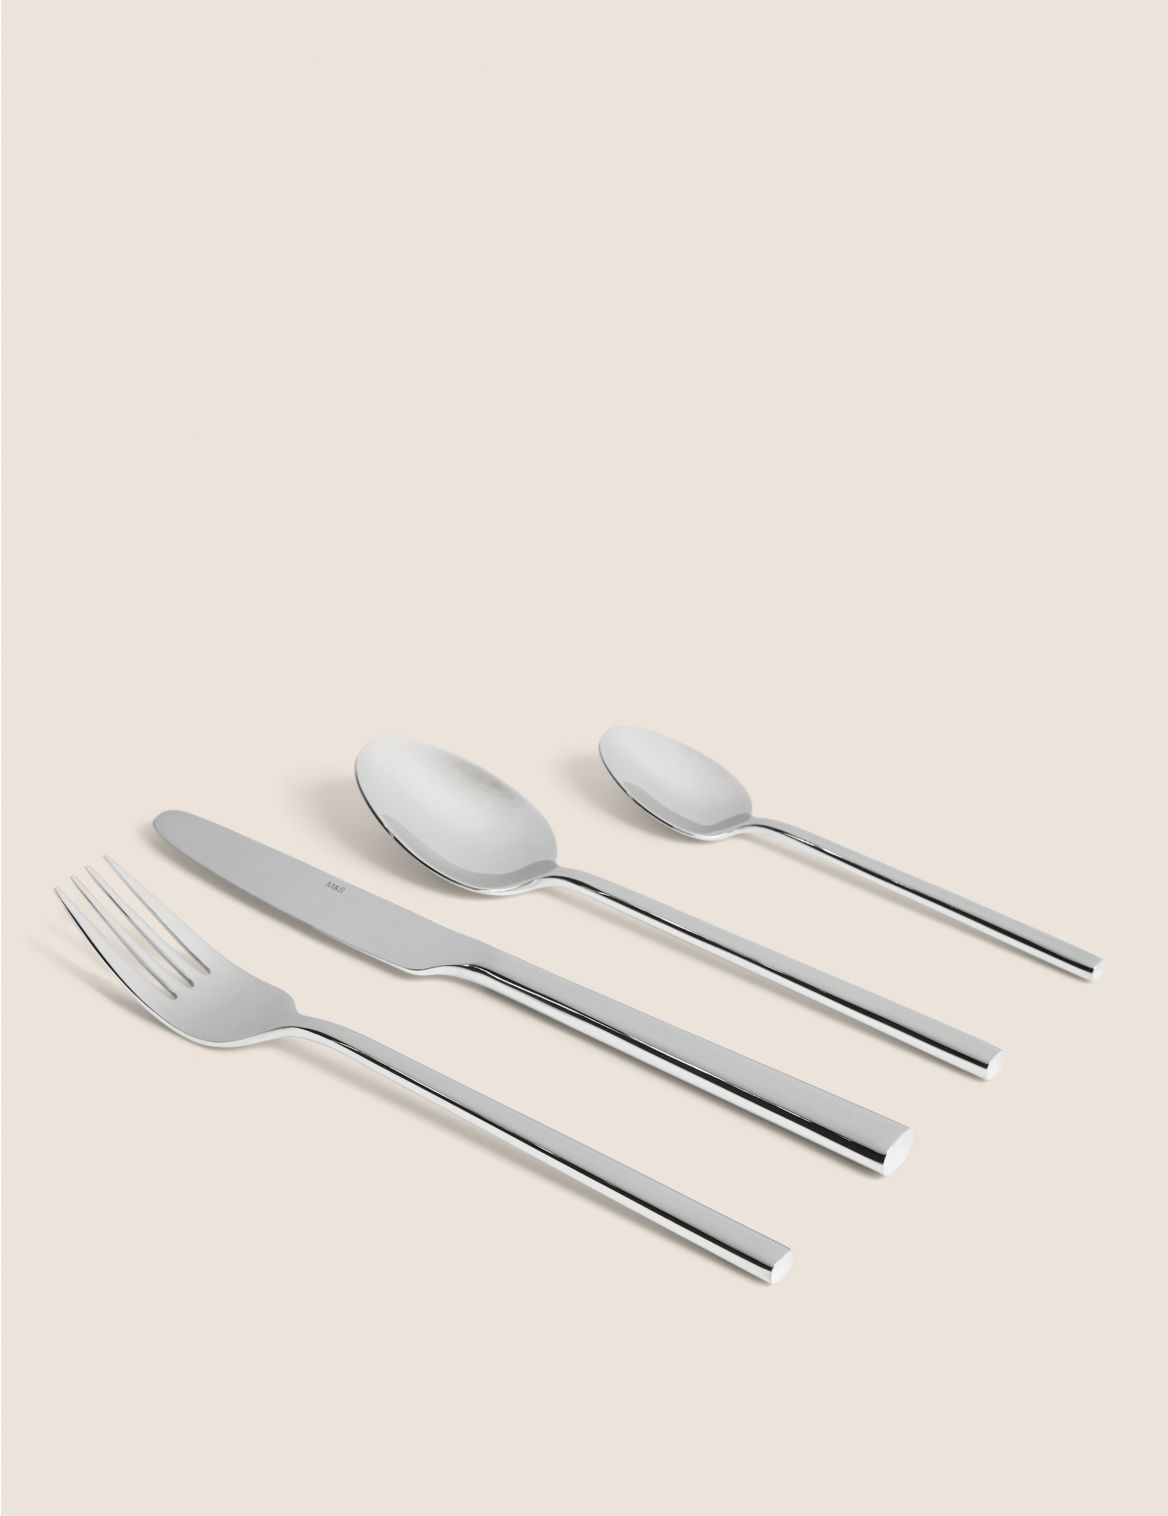 24 Piece Manhattan Cutlery Set silver